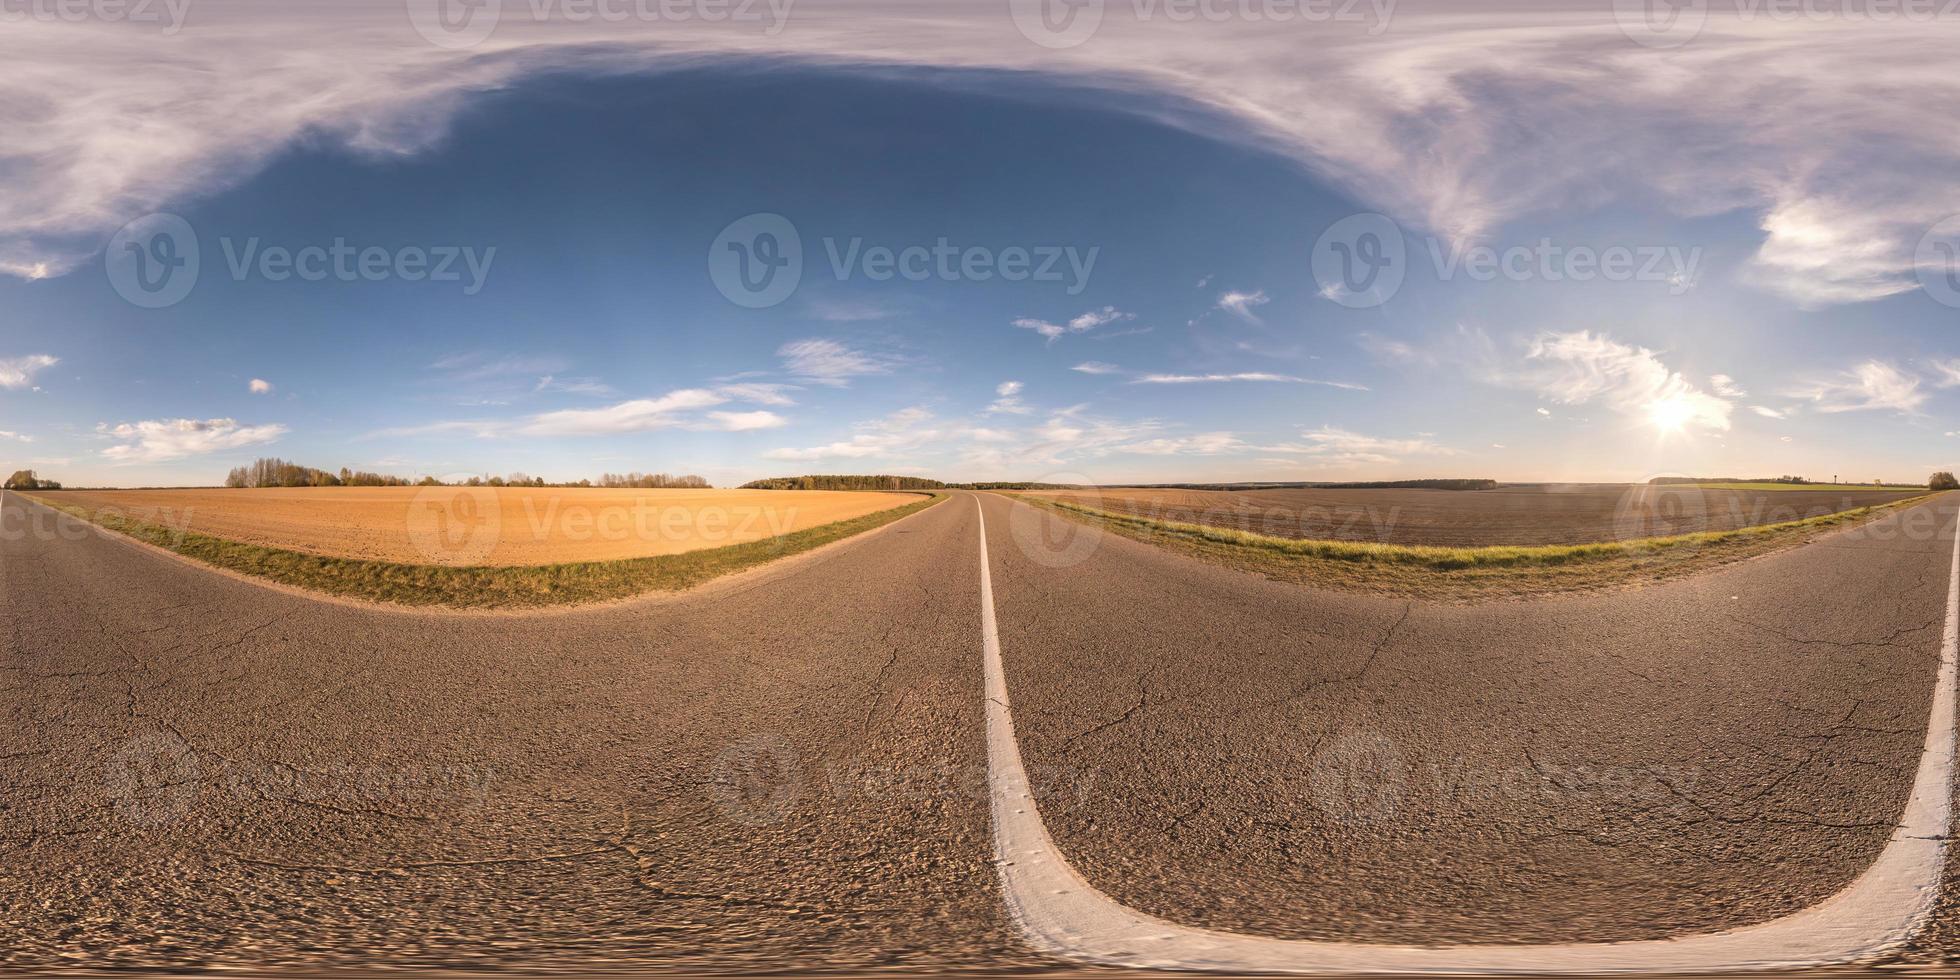 vista de ángulo de 360 grados de panorama hdri esférico completo sin tráfico en carretera asfaltada entre campos en el día de primavera con noche nublada en proyección equirectangular, contenido vr ar foto